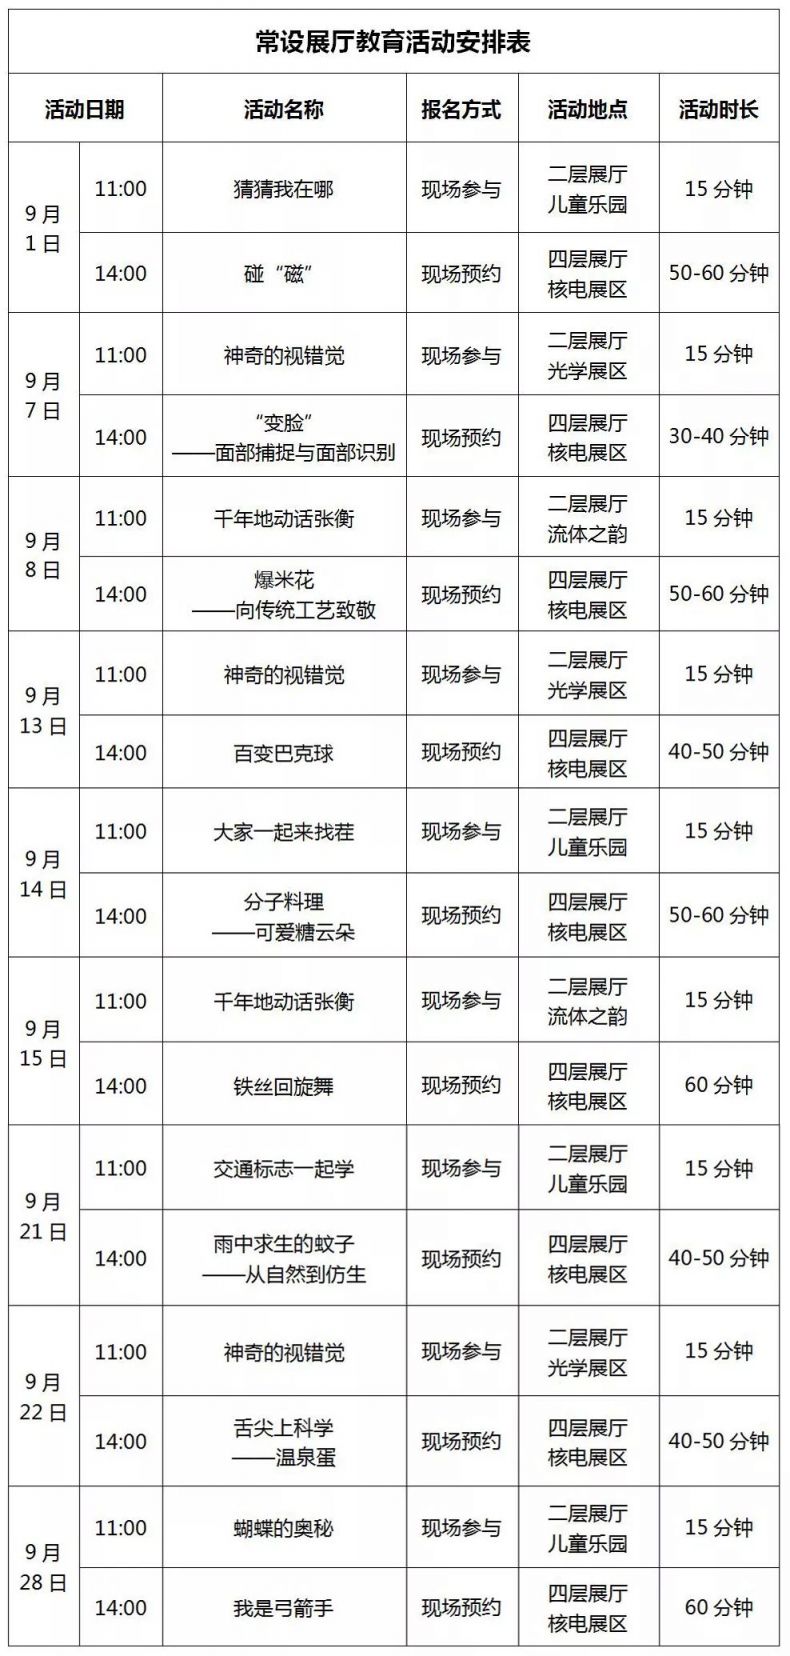 2019年广西科技馆九月展厅科普活动安排表